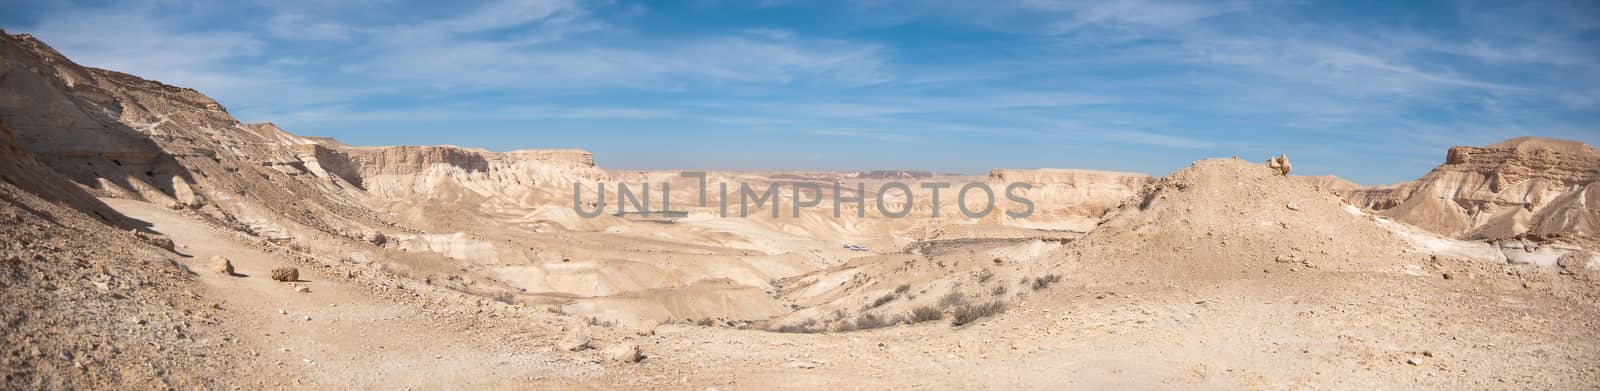 Negev Desert panoramic view by javax